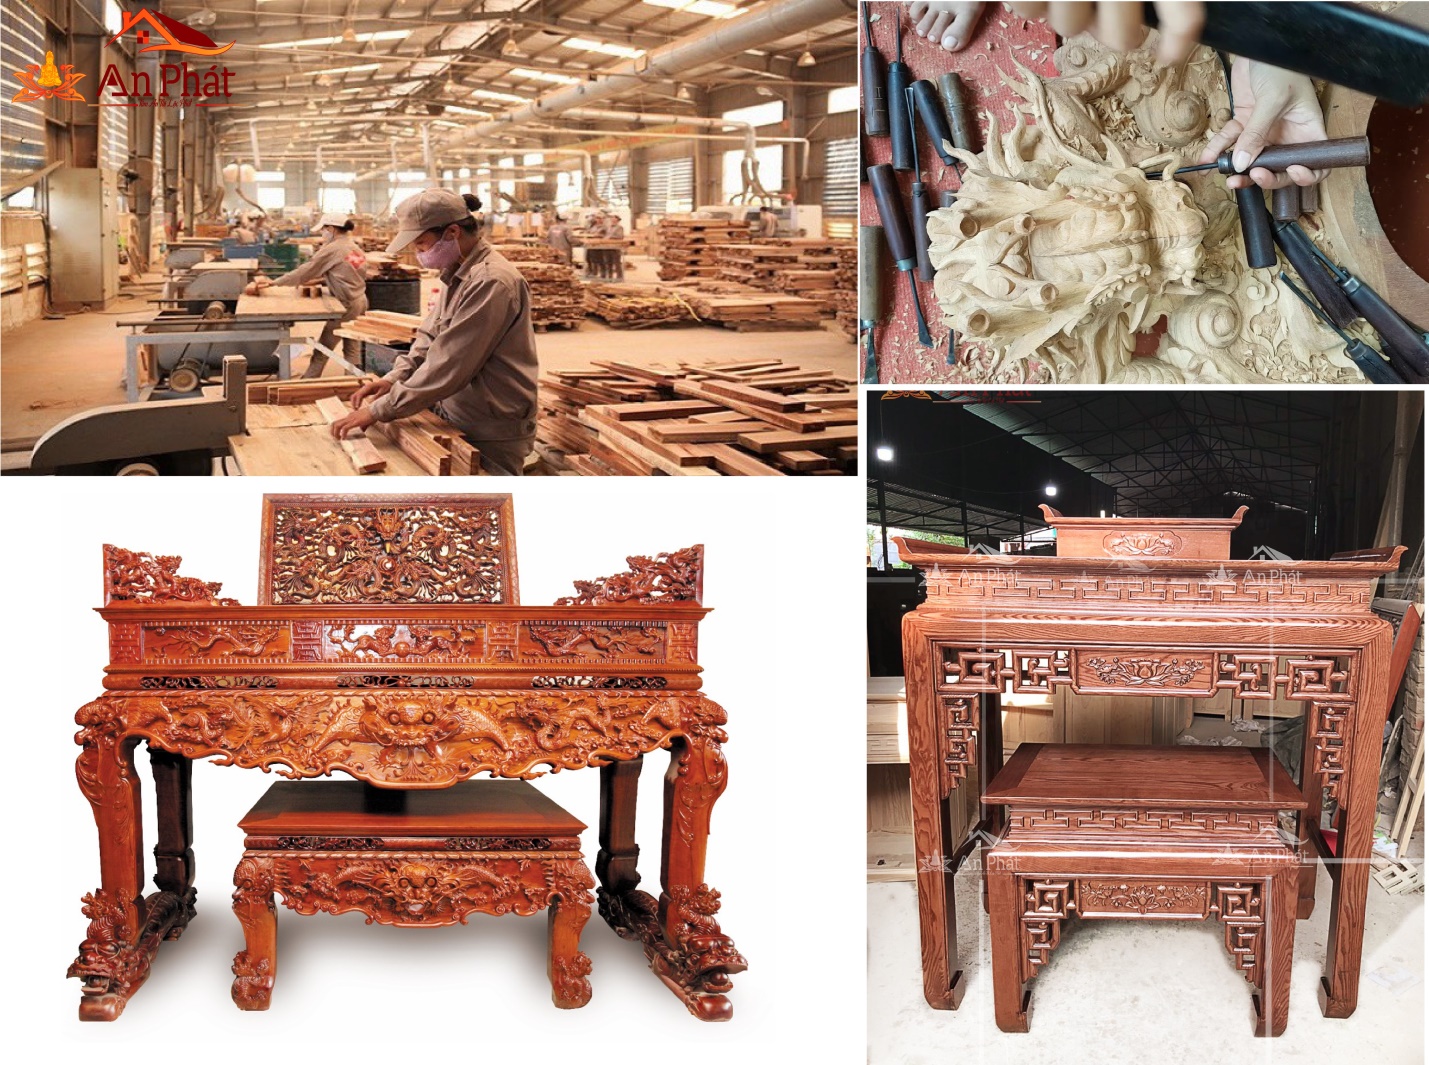 Kinh nghiệm lựa chọn gỗ chuẩn để làm bàn thờ đẹp và chất lượng